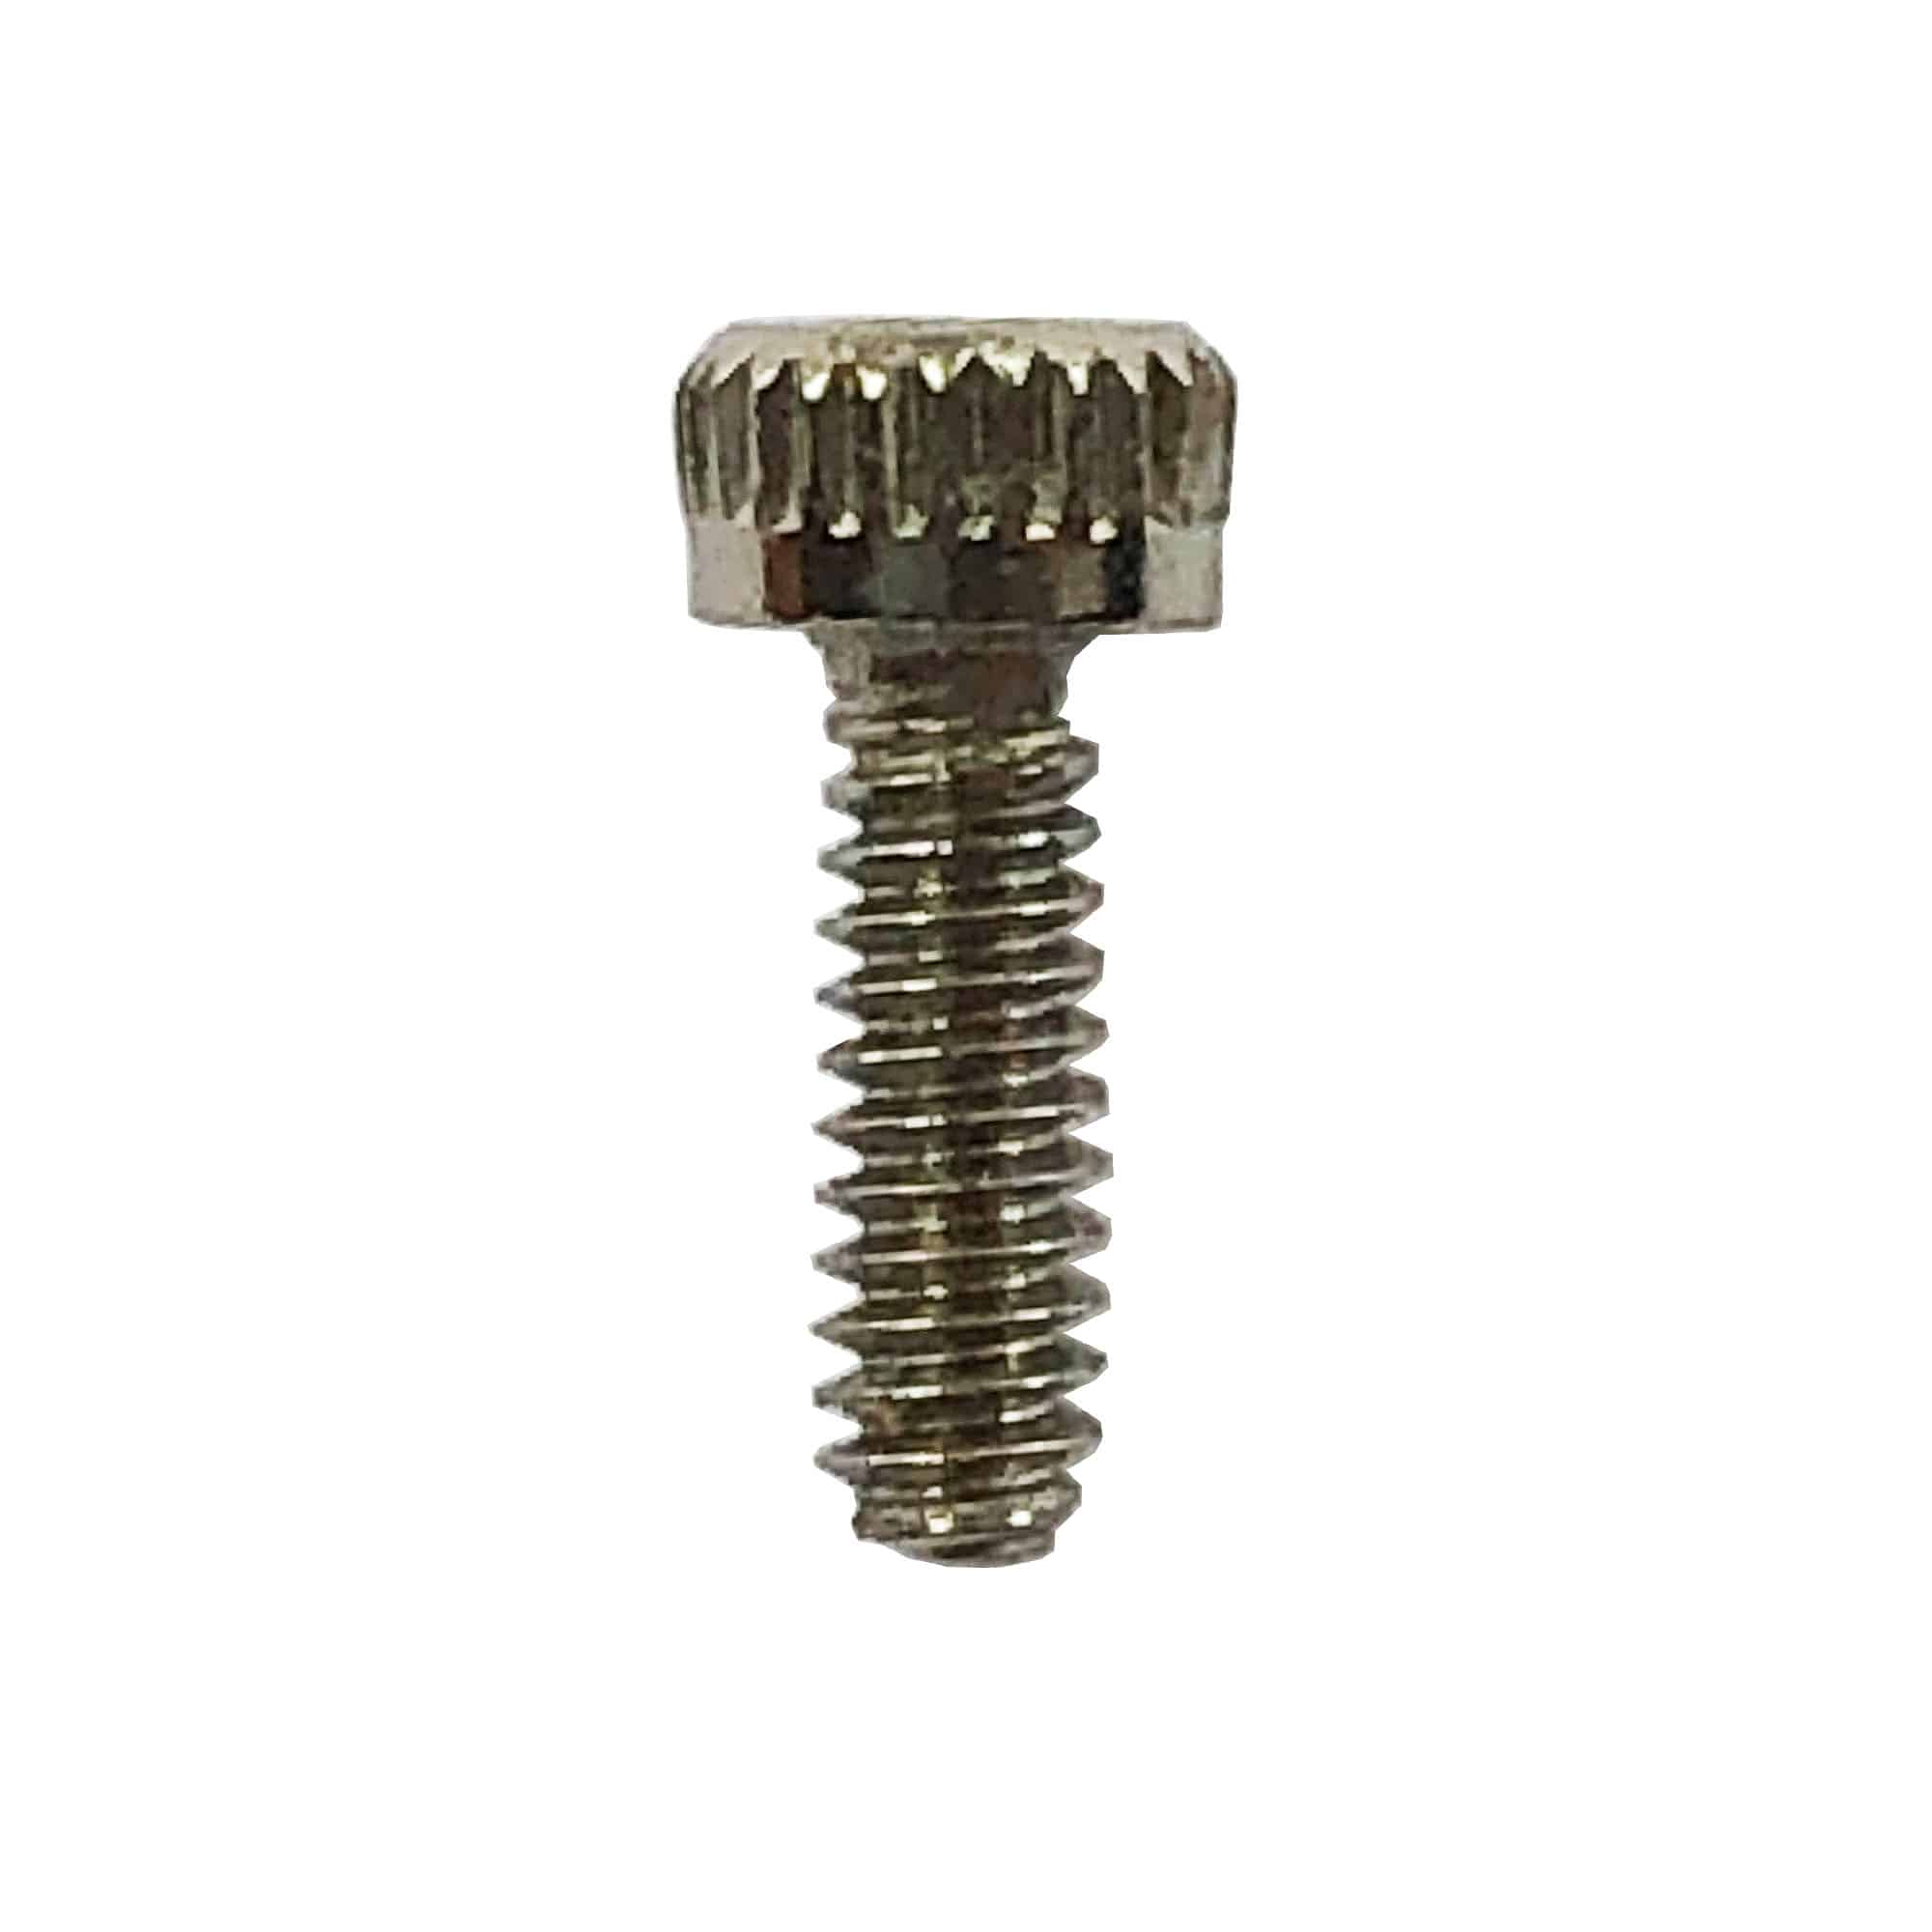 M1.6 A2 Grade Allen Key Cap Socket Screw - Speciality Metals